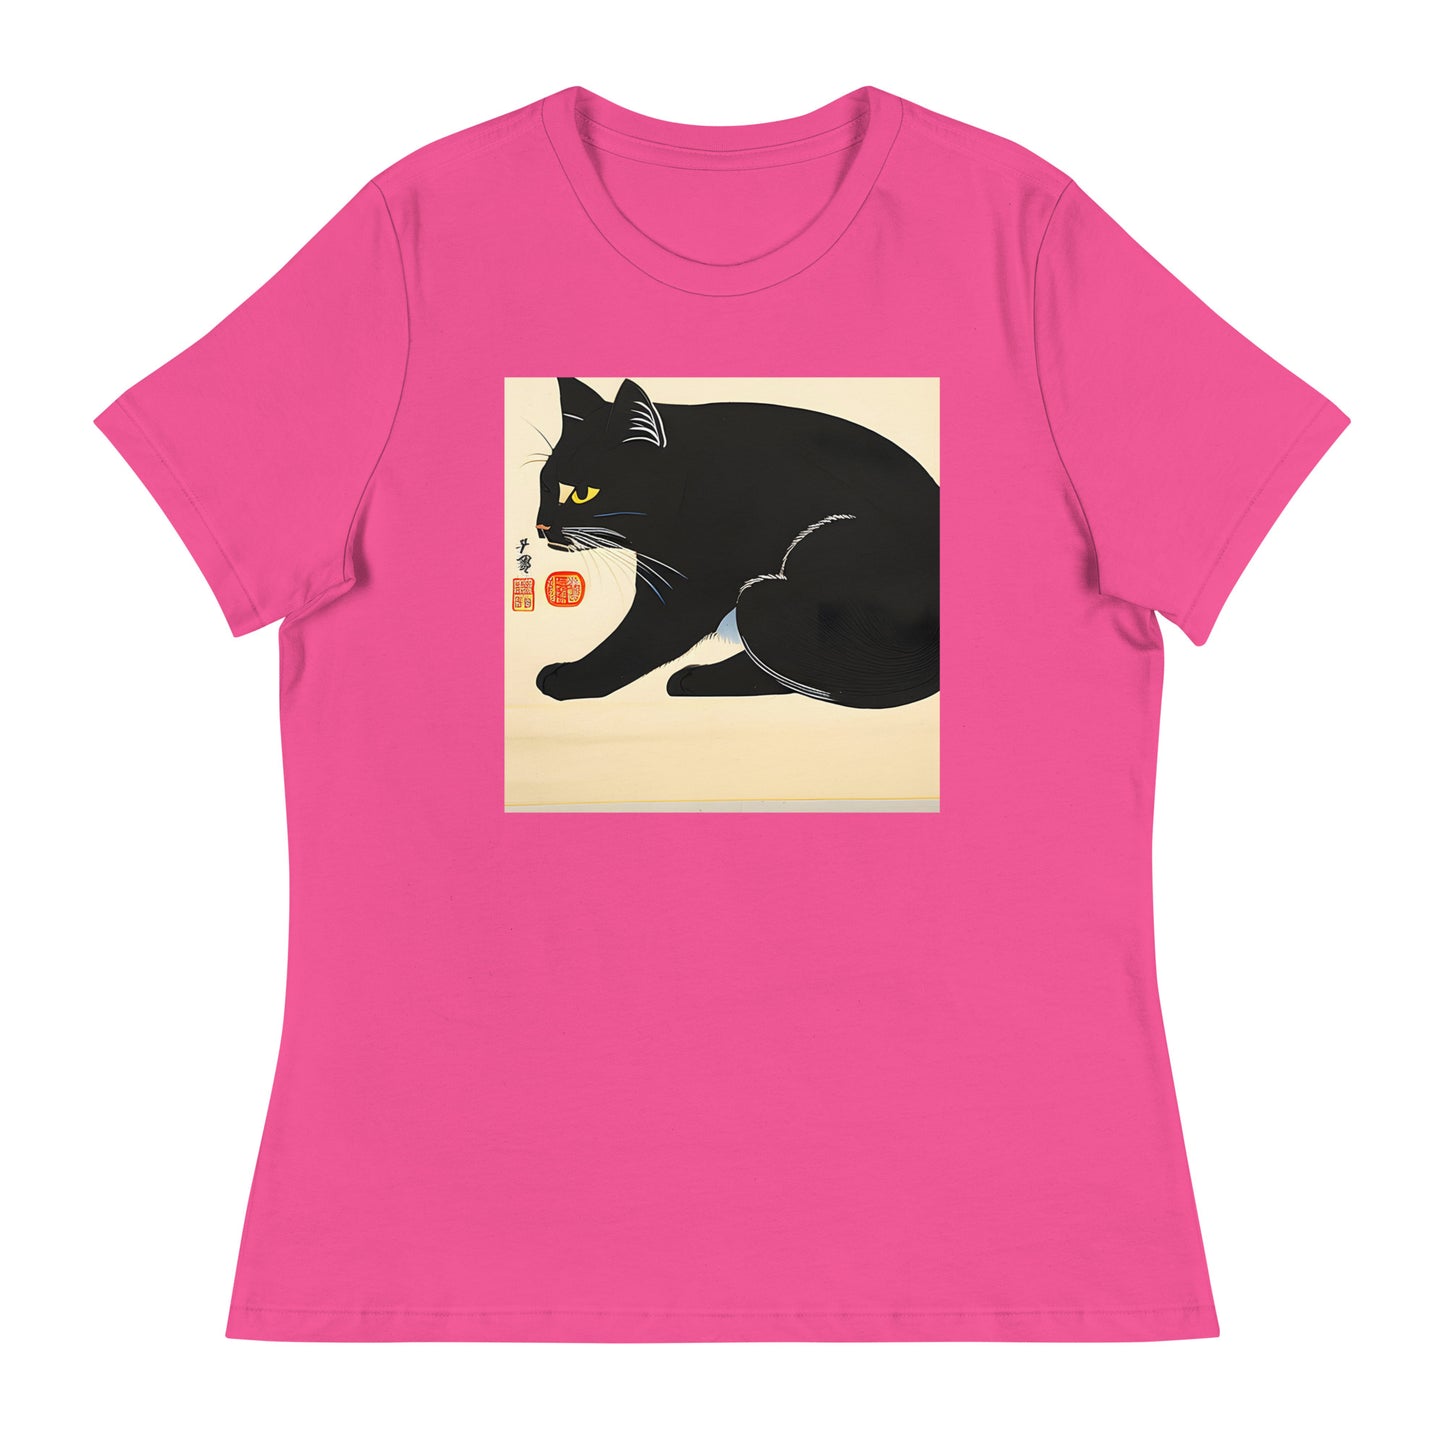 Meowsome Women's T-Shirt - 019